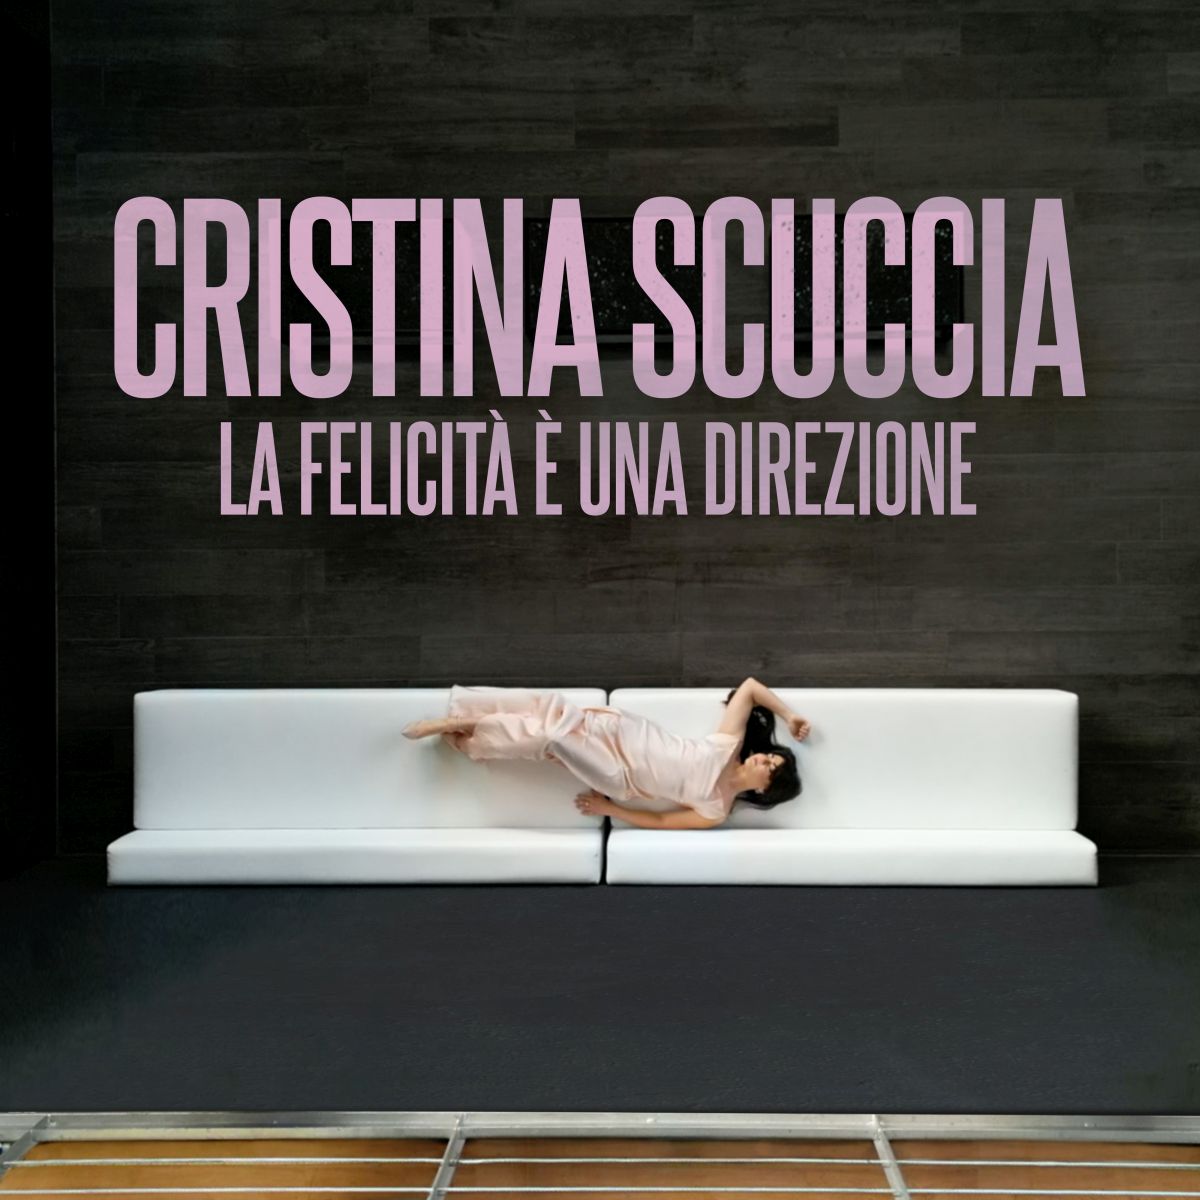 La felicità è una direzione, online il video del singolo di Cristina Scuccia